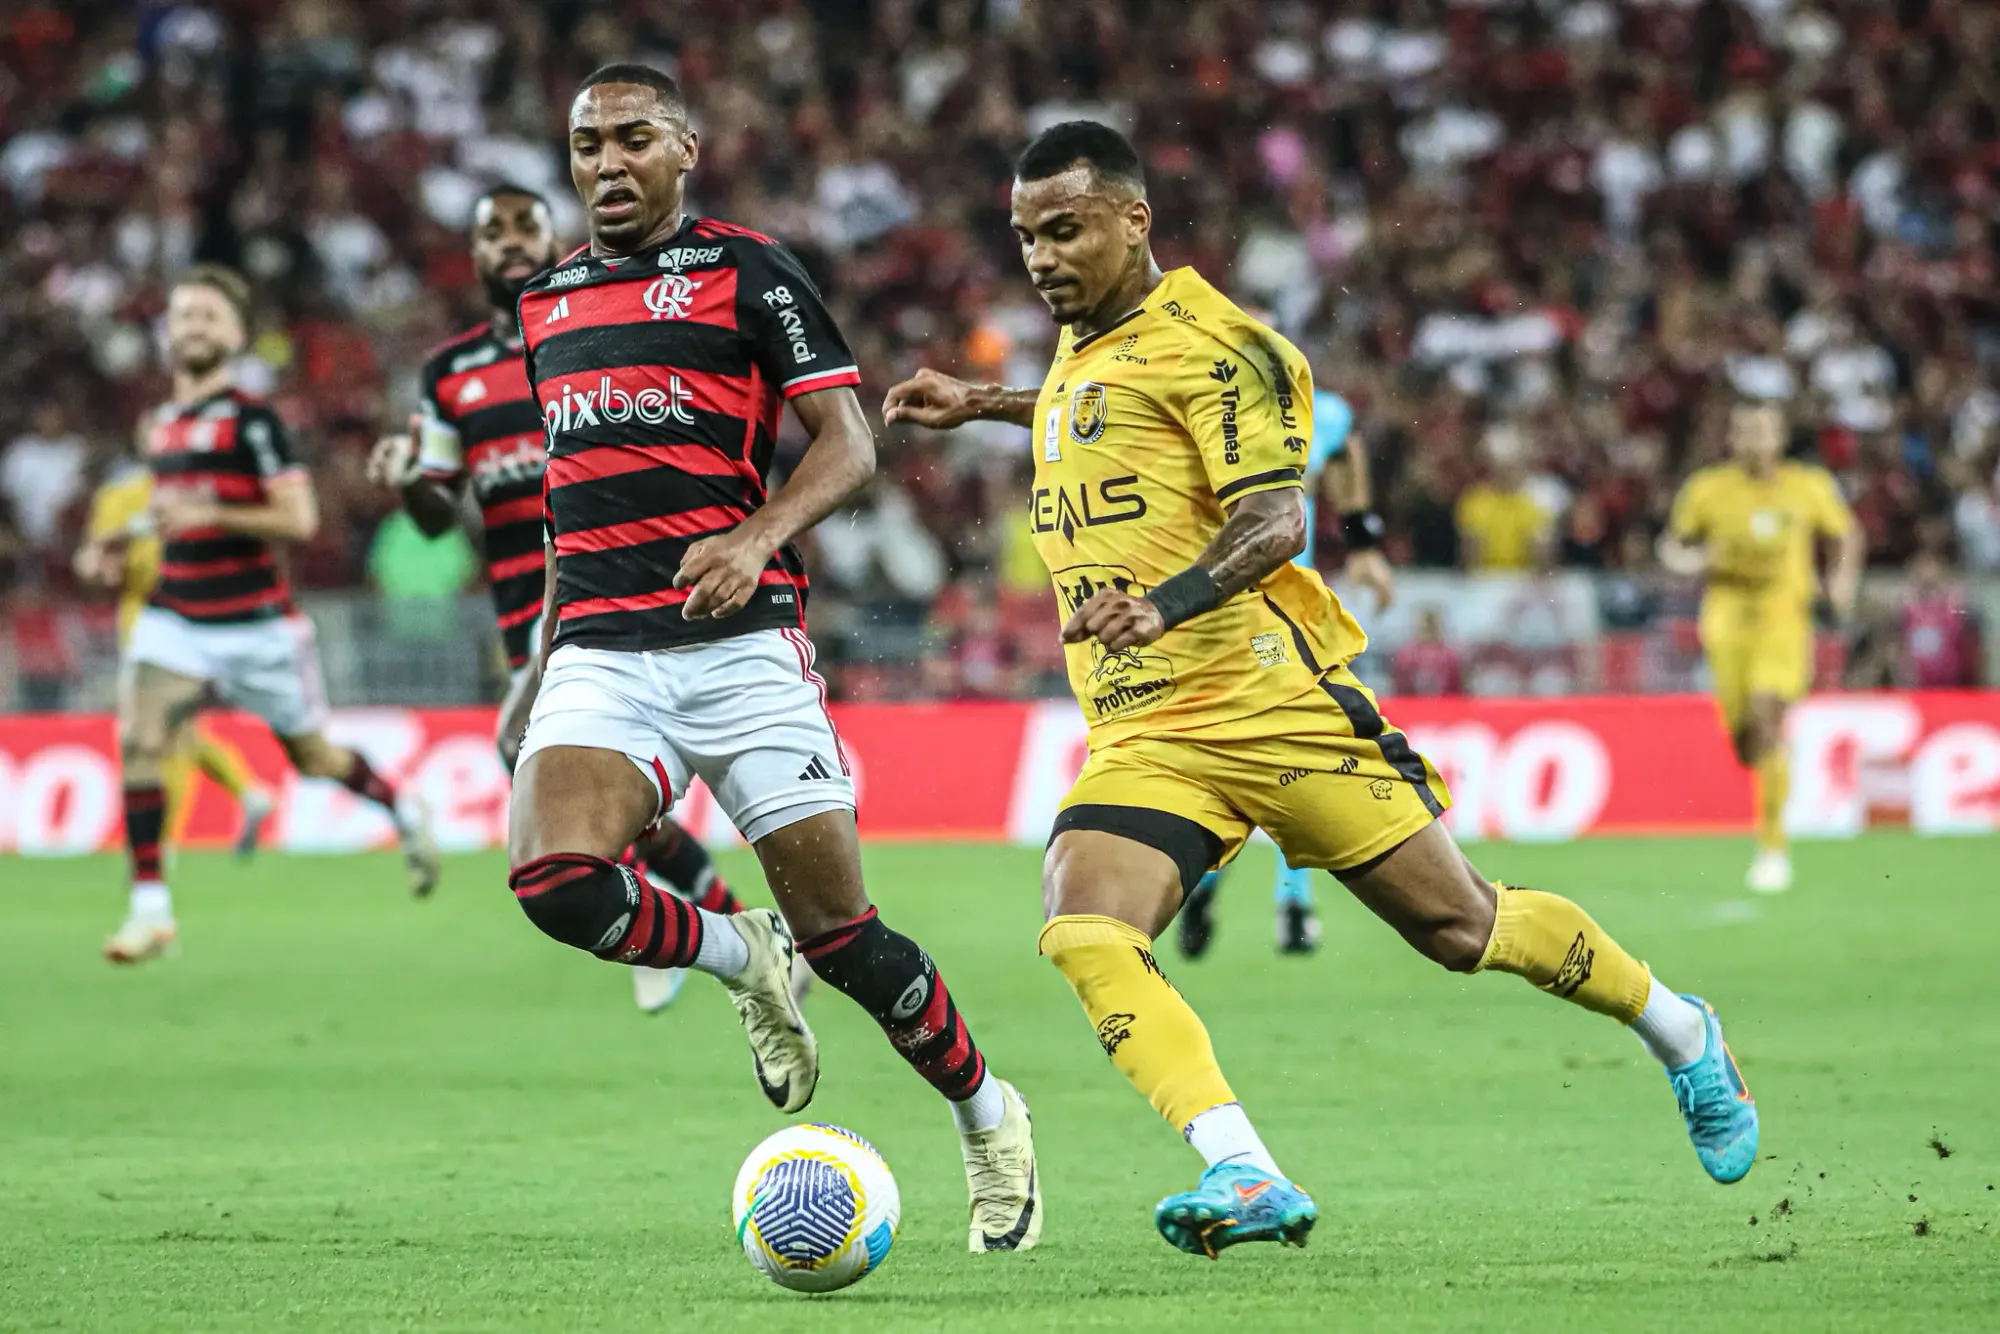 Flamengo derrota Amazonas e avança na Copa do Brasil apesar de atuação irregular